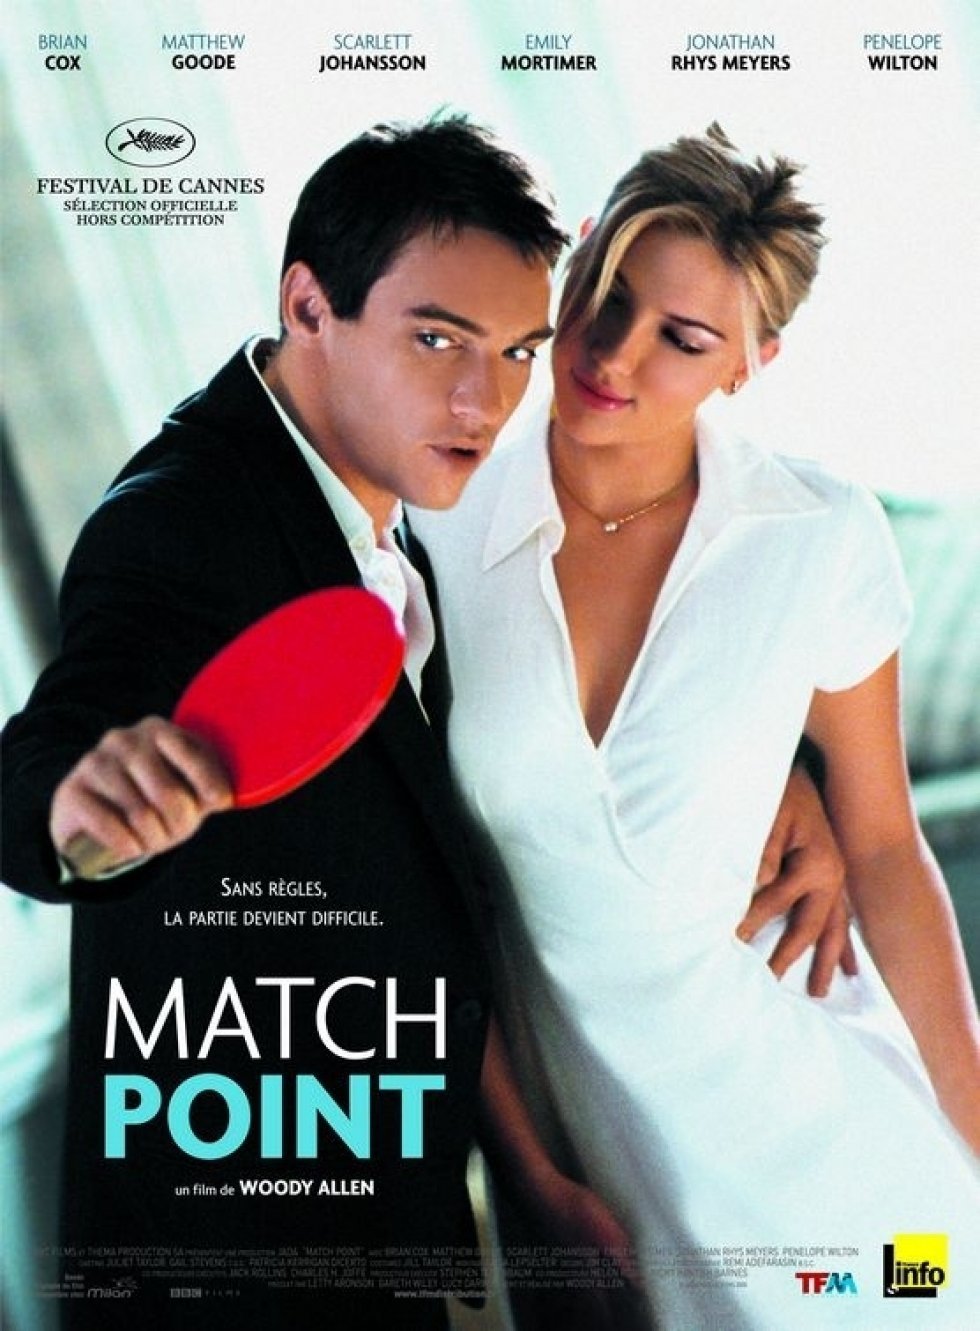 Match Point - BBC Films - Woody Allen